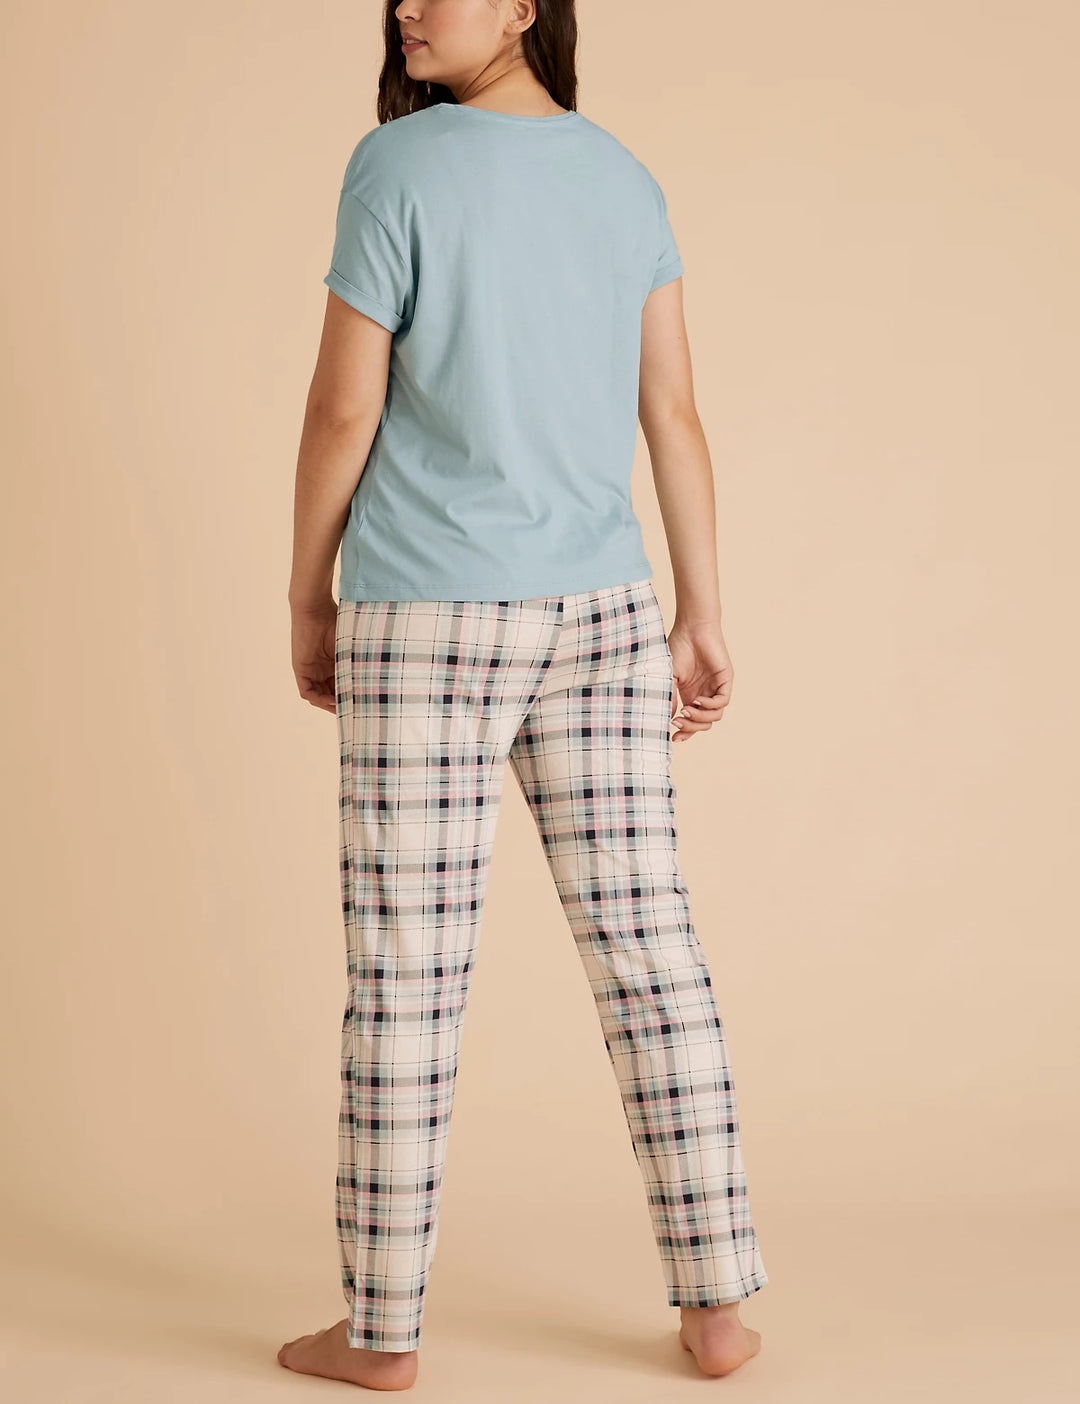 M&S Ladies S/S Night Suit Top Pajama T37/4432F